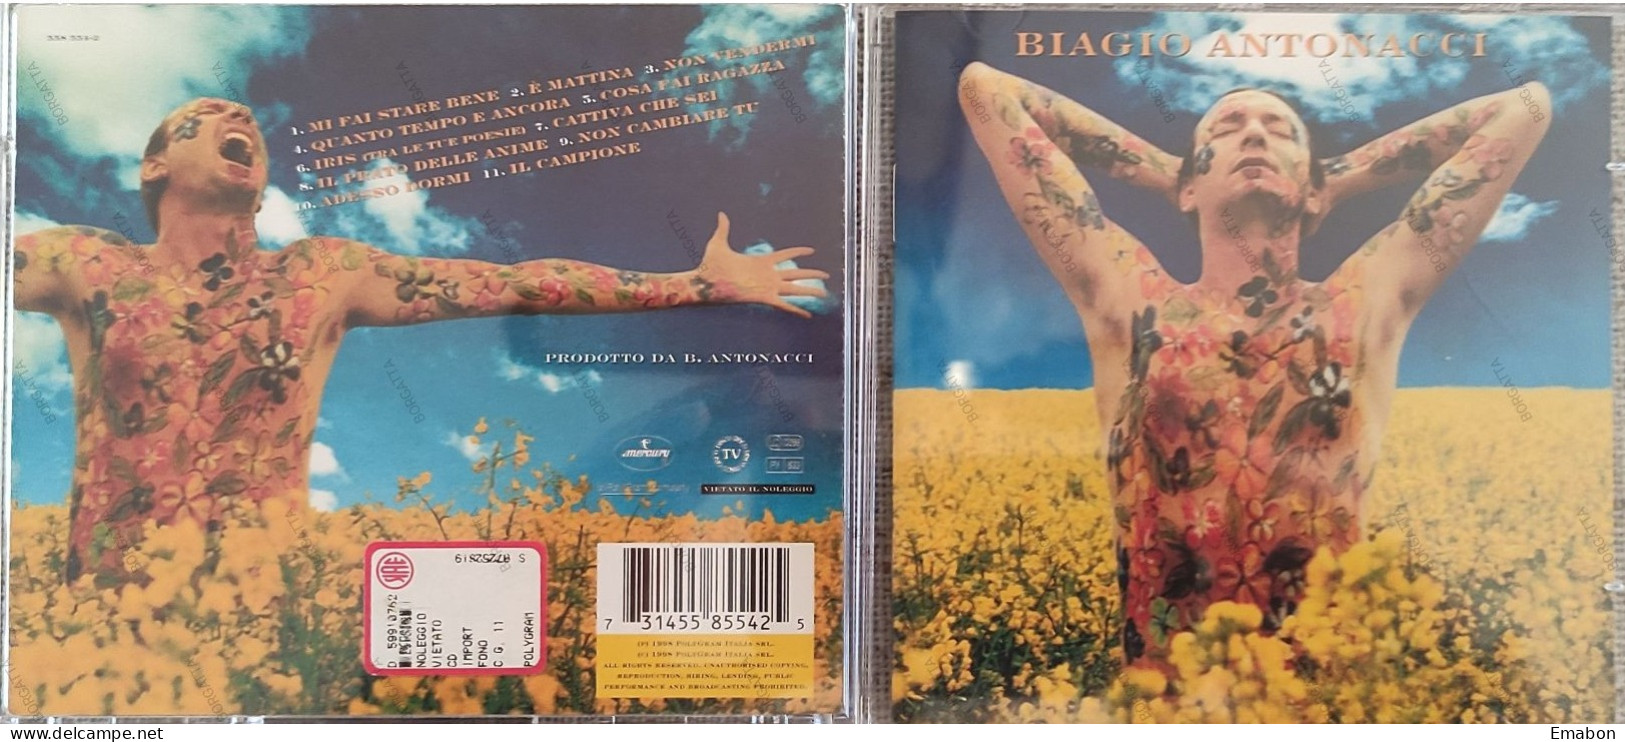 BORGATTA - ITALIANA - Cd  BIAGIO ANTONACCI - MI FAI STARE BENE  - POLYGRAM 1998 -  USATO In Buono Stato - Otros - Canción Italiana